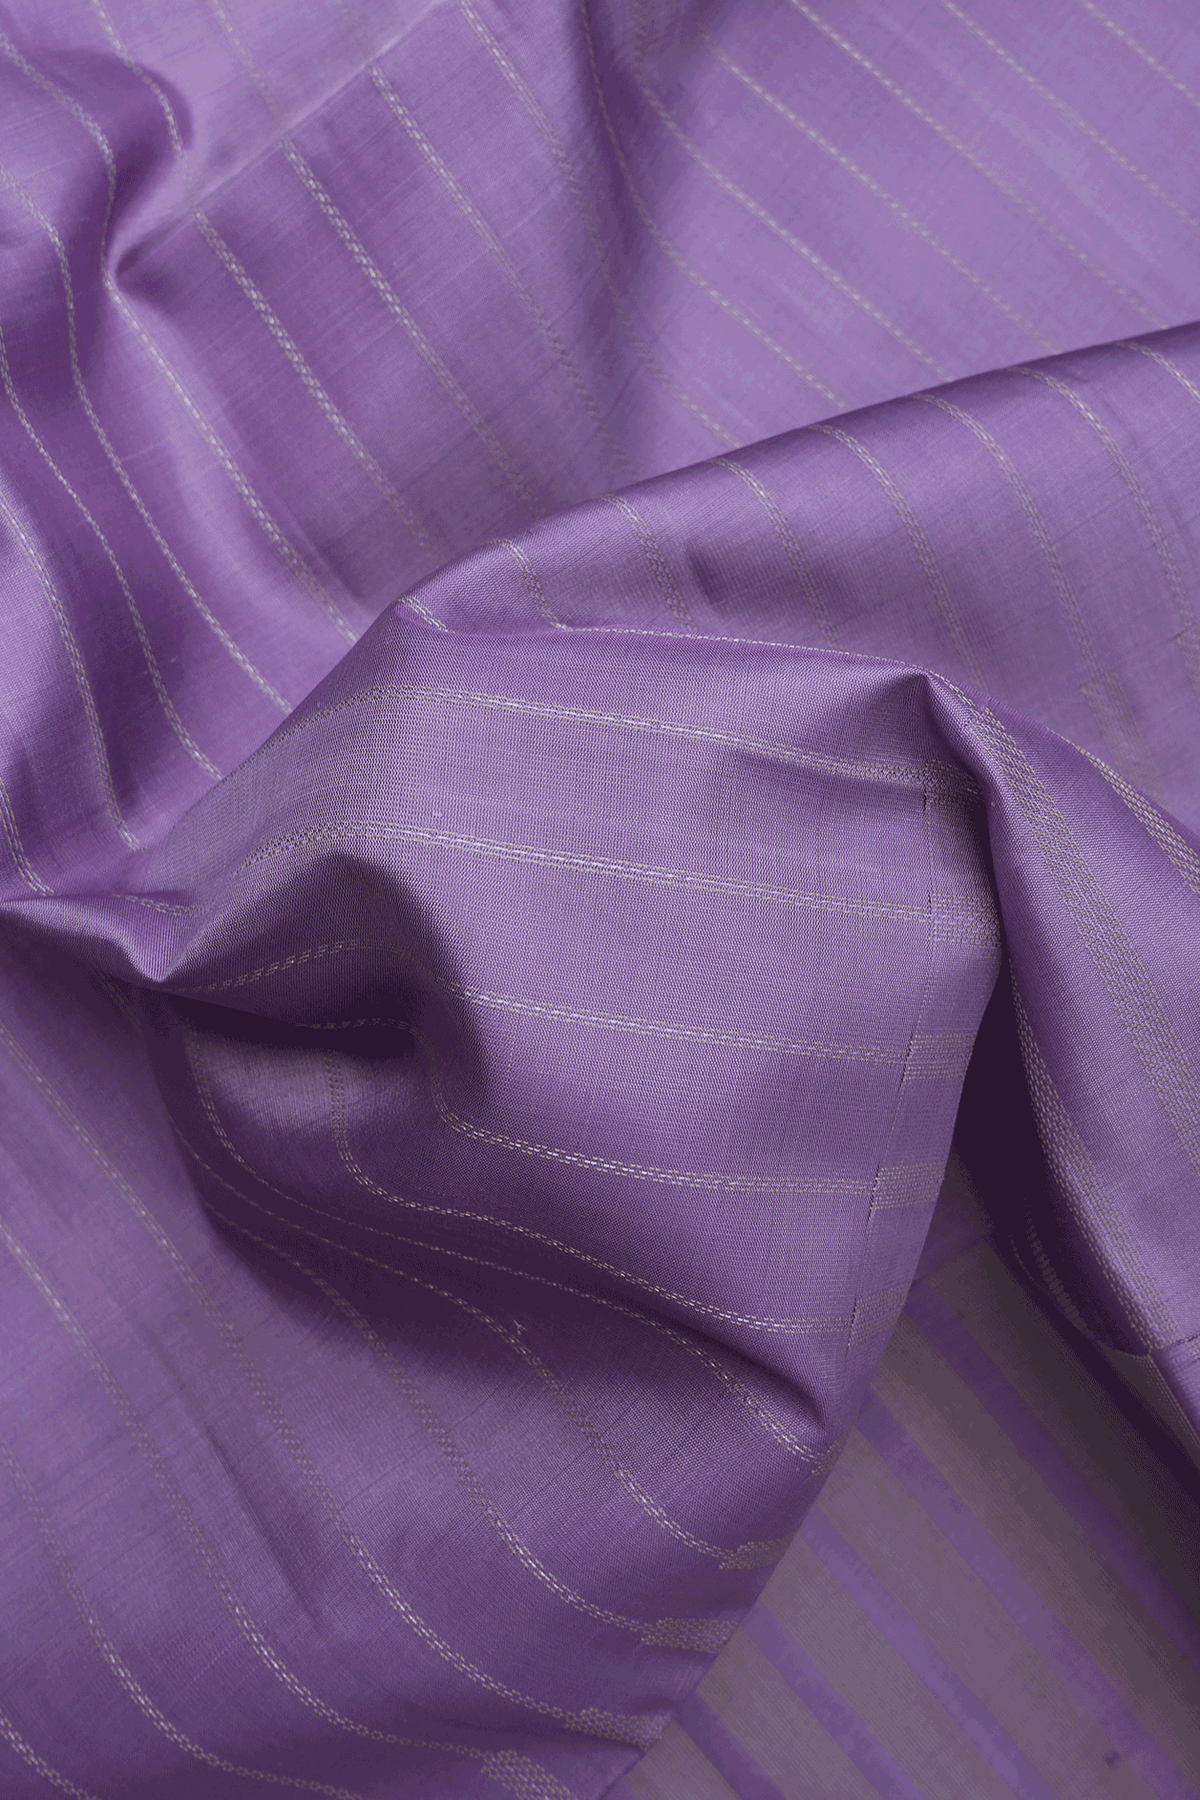 Stripes Threadwork Design Pastel Purple Soft Silk Saree